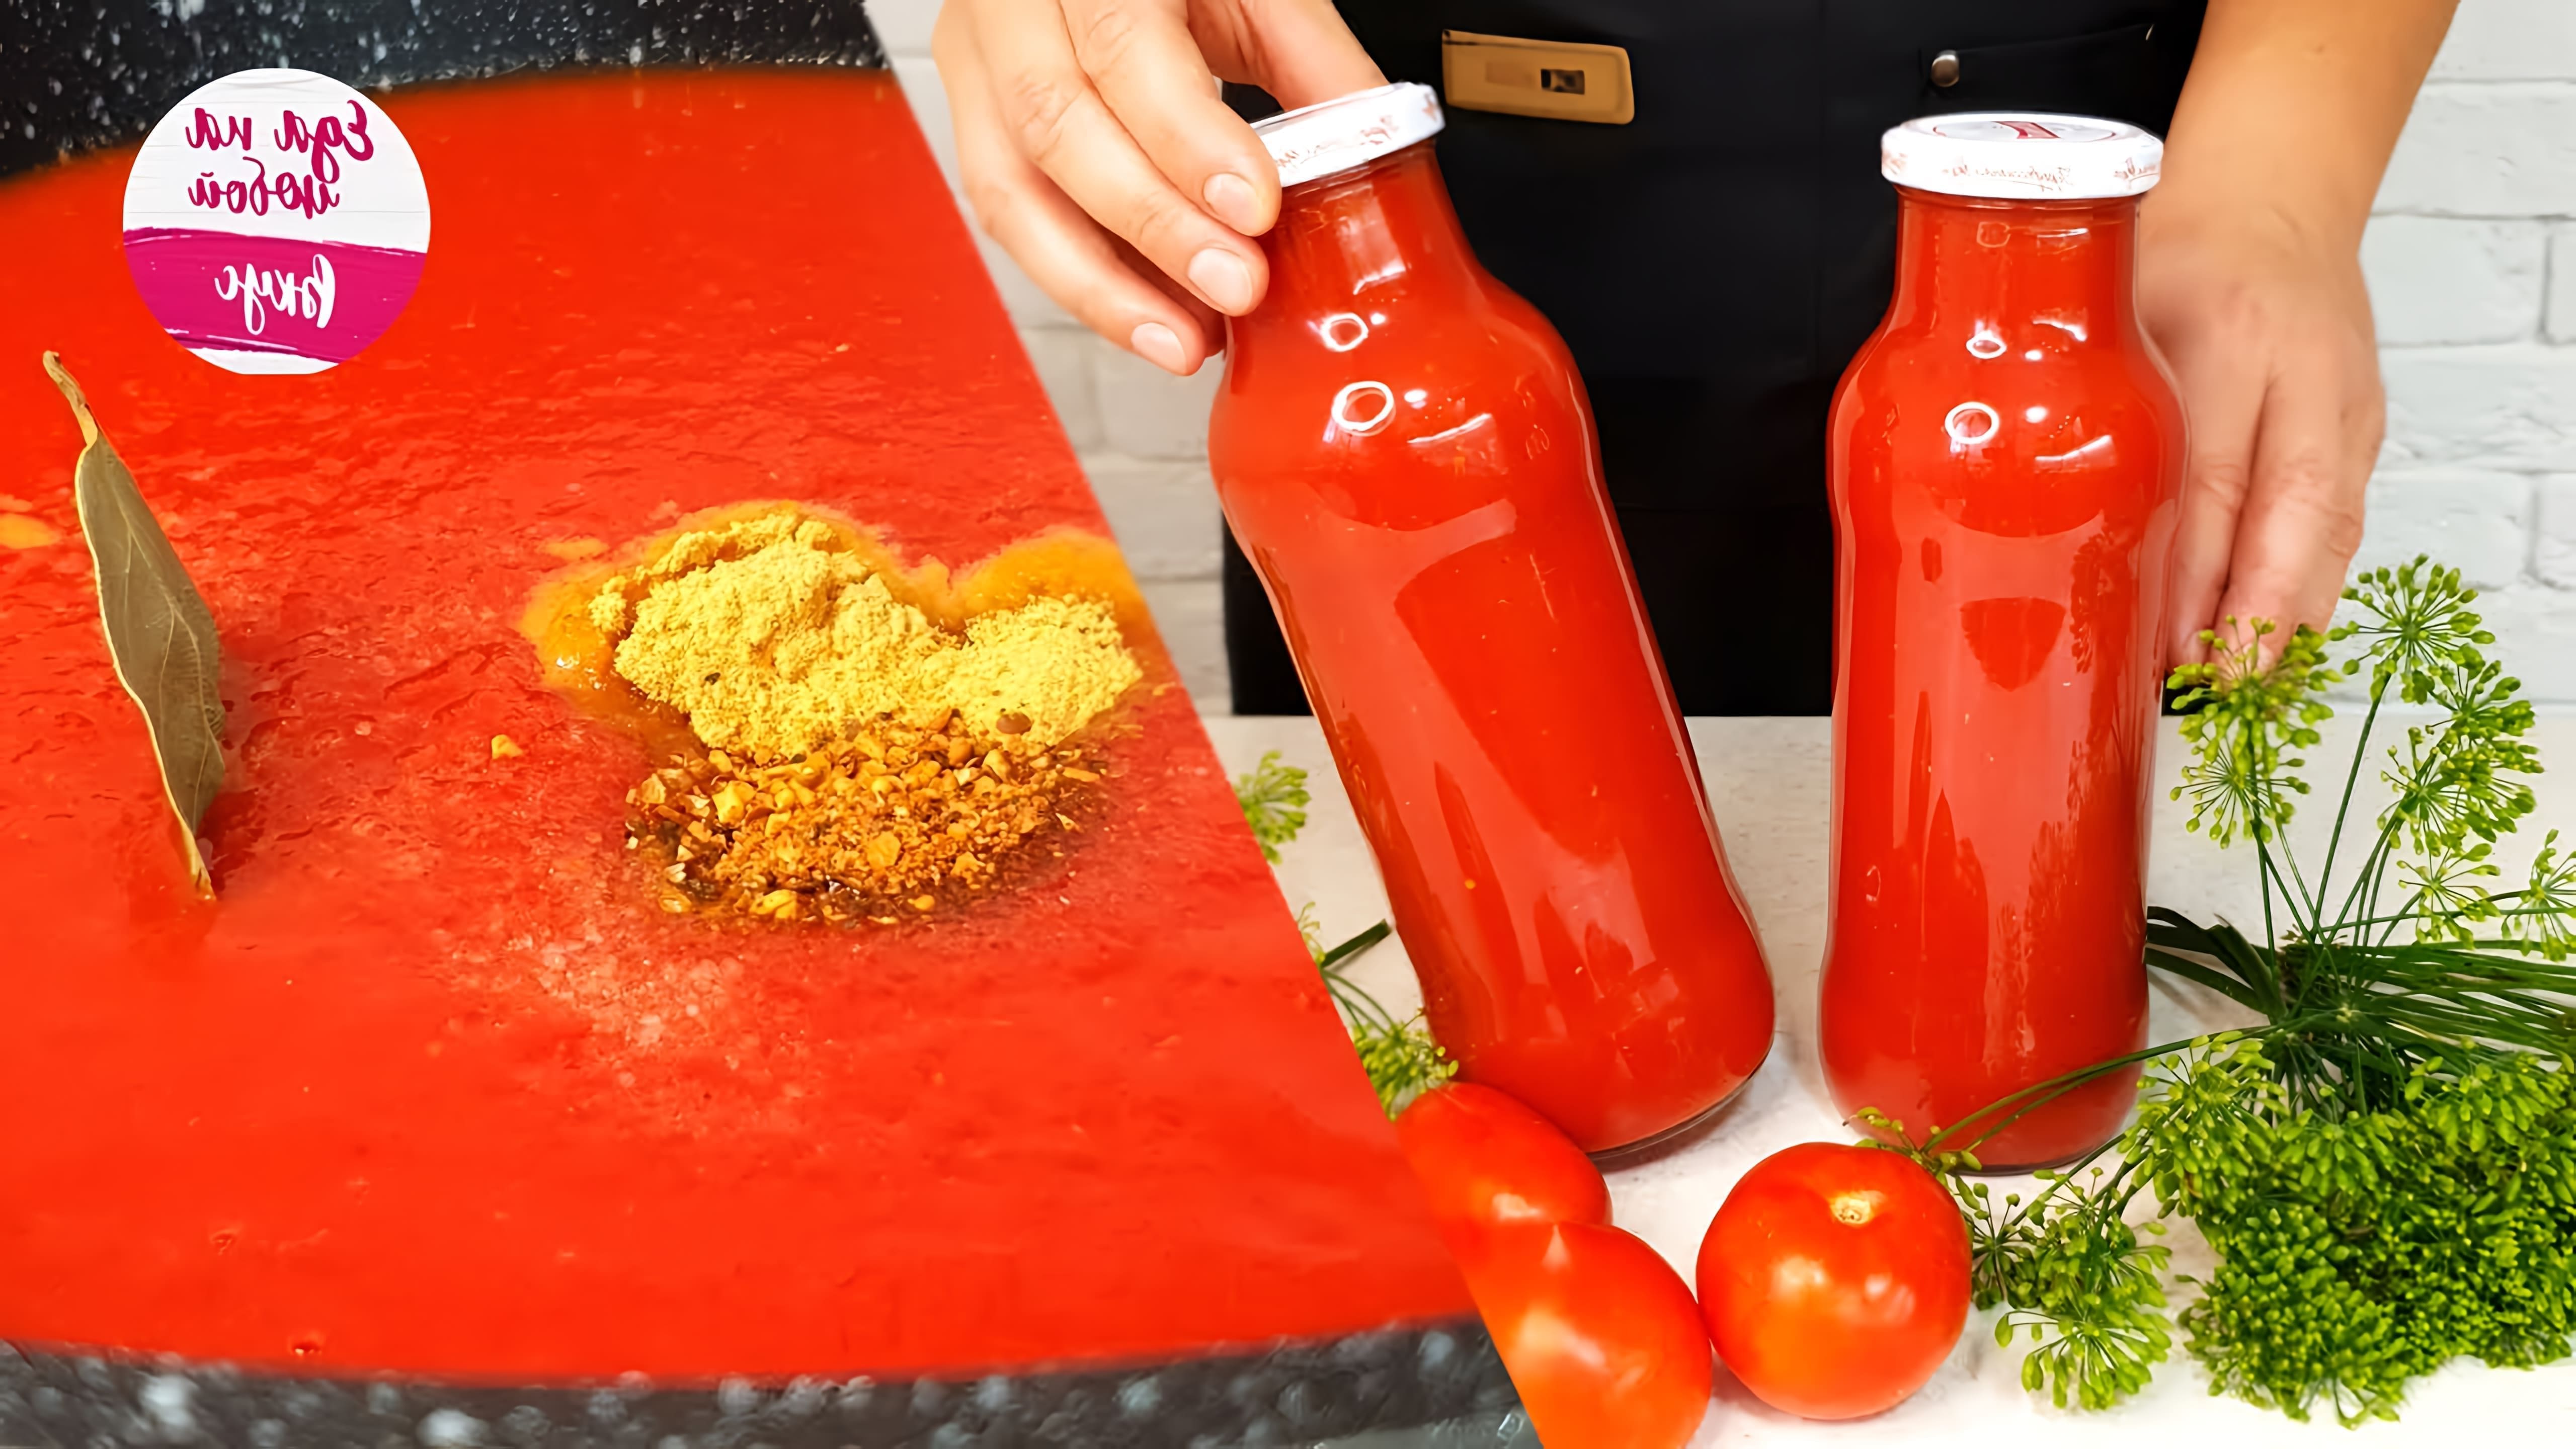 В этом видео Анастасия показывает, как приготовить домашний кетчуп без крахмала